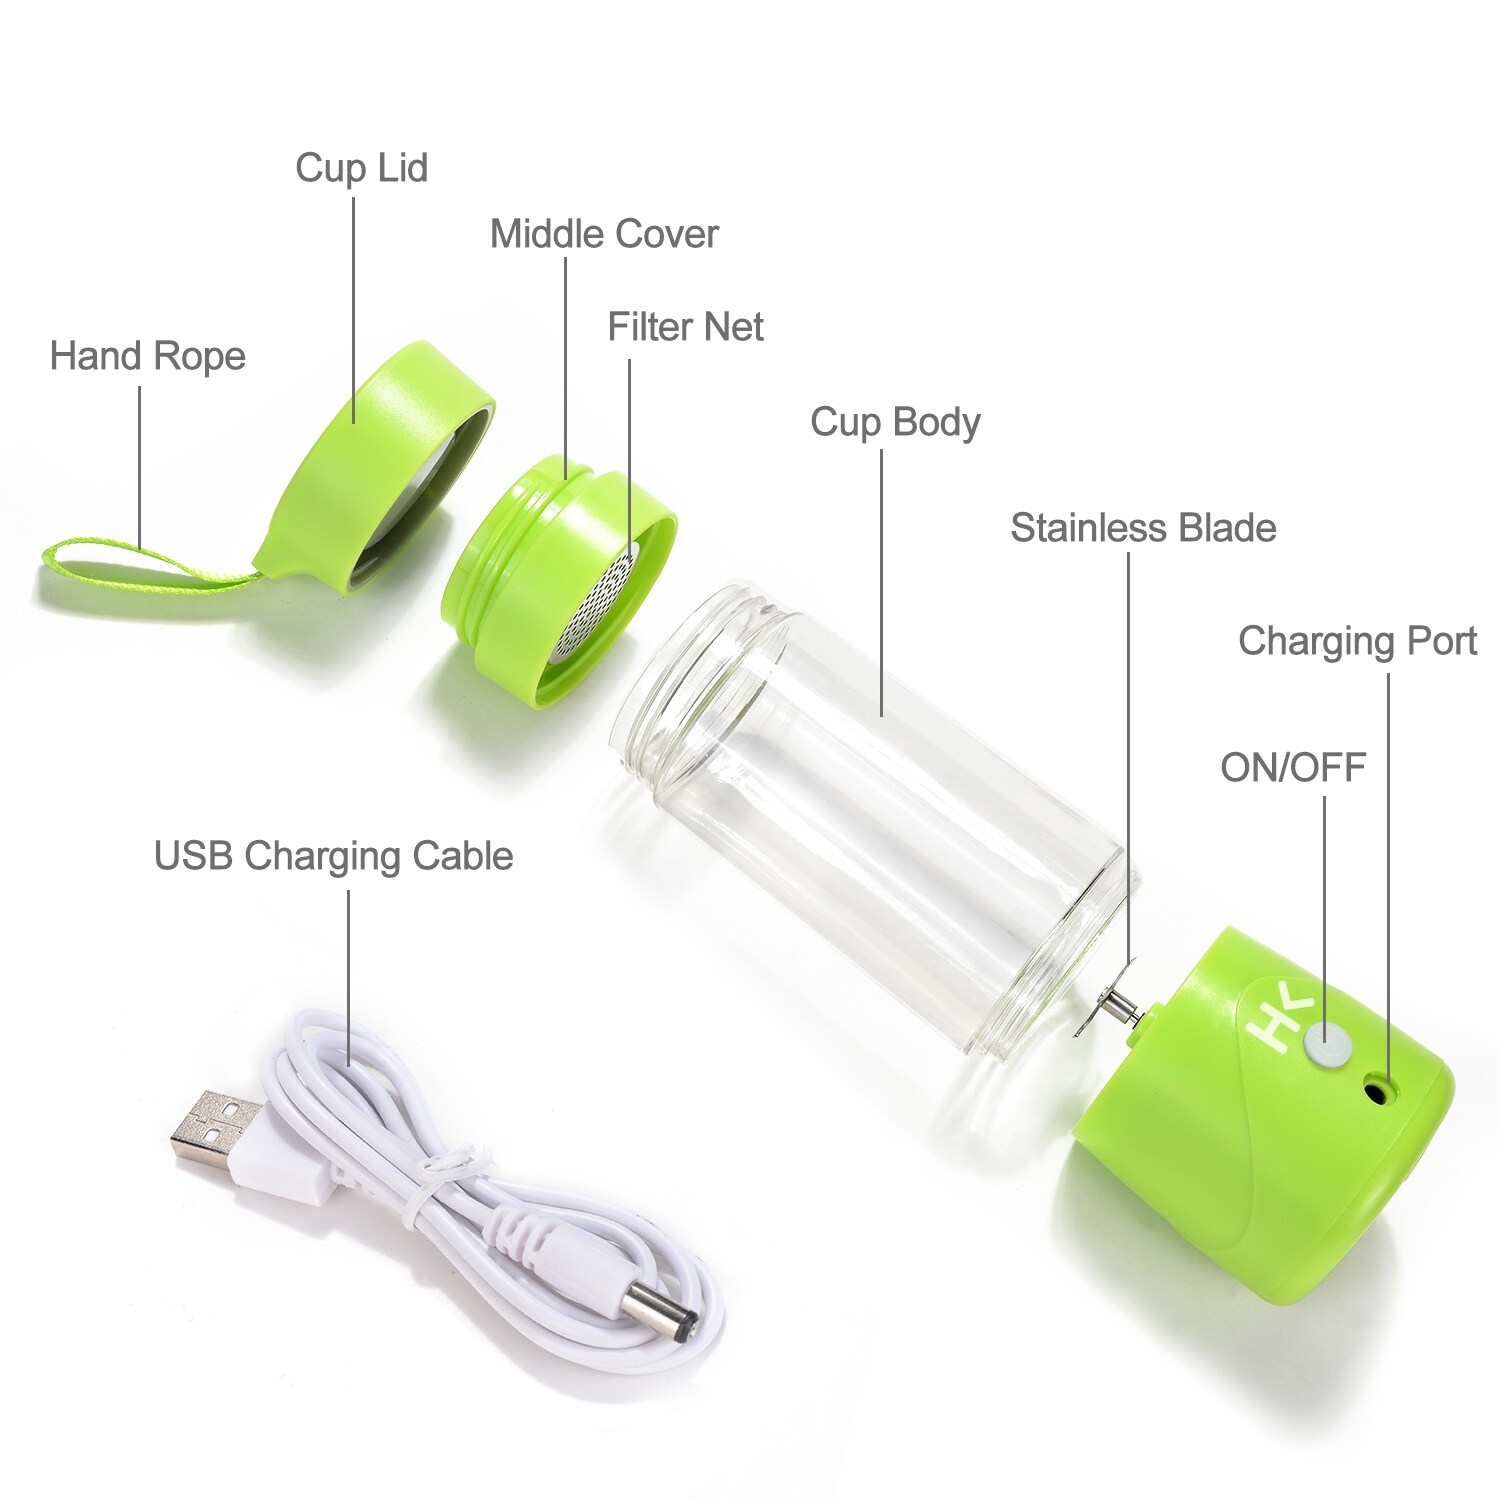 380ml USB Electric Fruit Juicer Handheld Smoothie Maker Blender Juice Cup -  Bed Bath & Beyond - 22547044